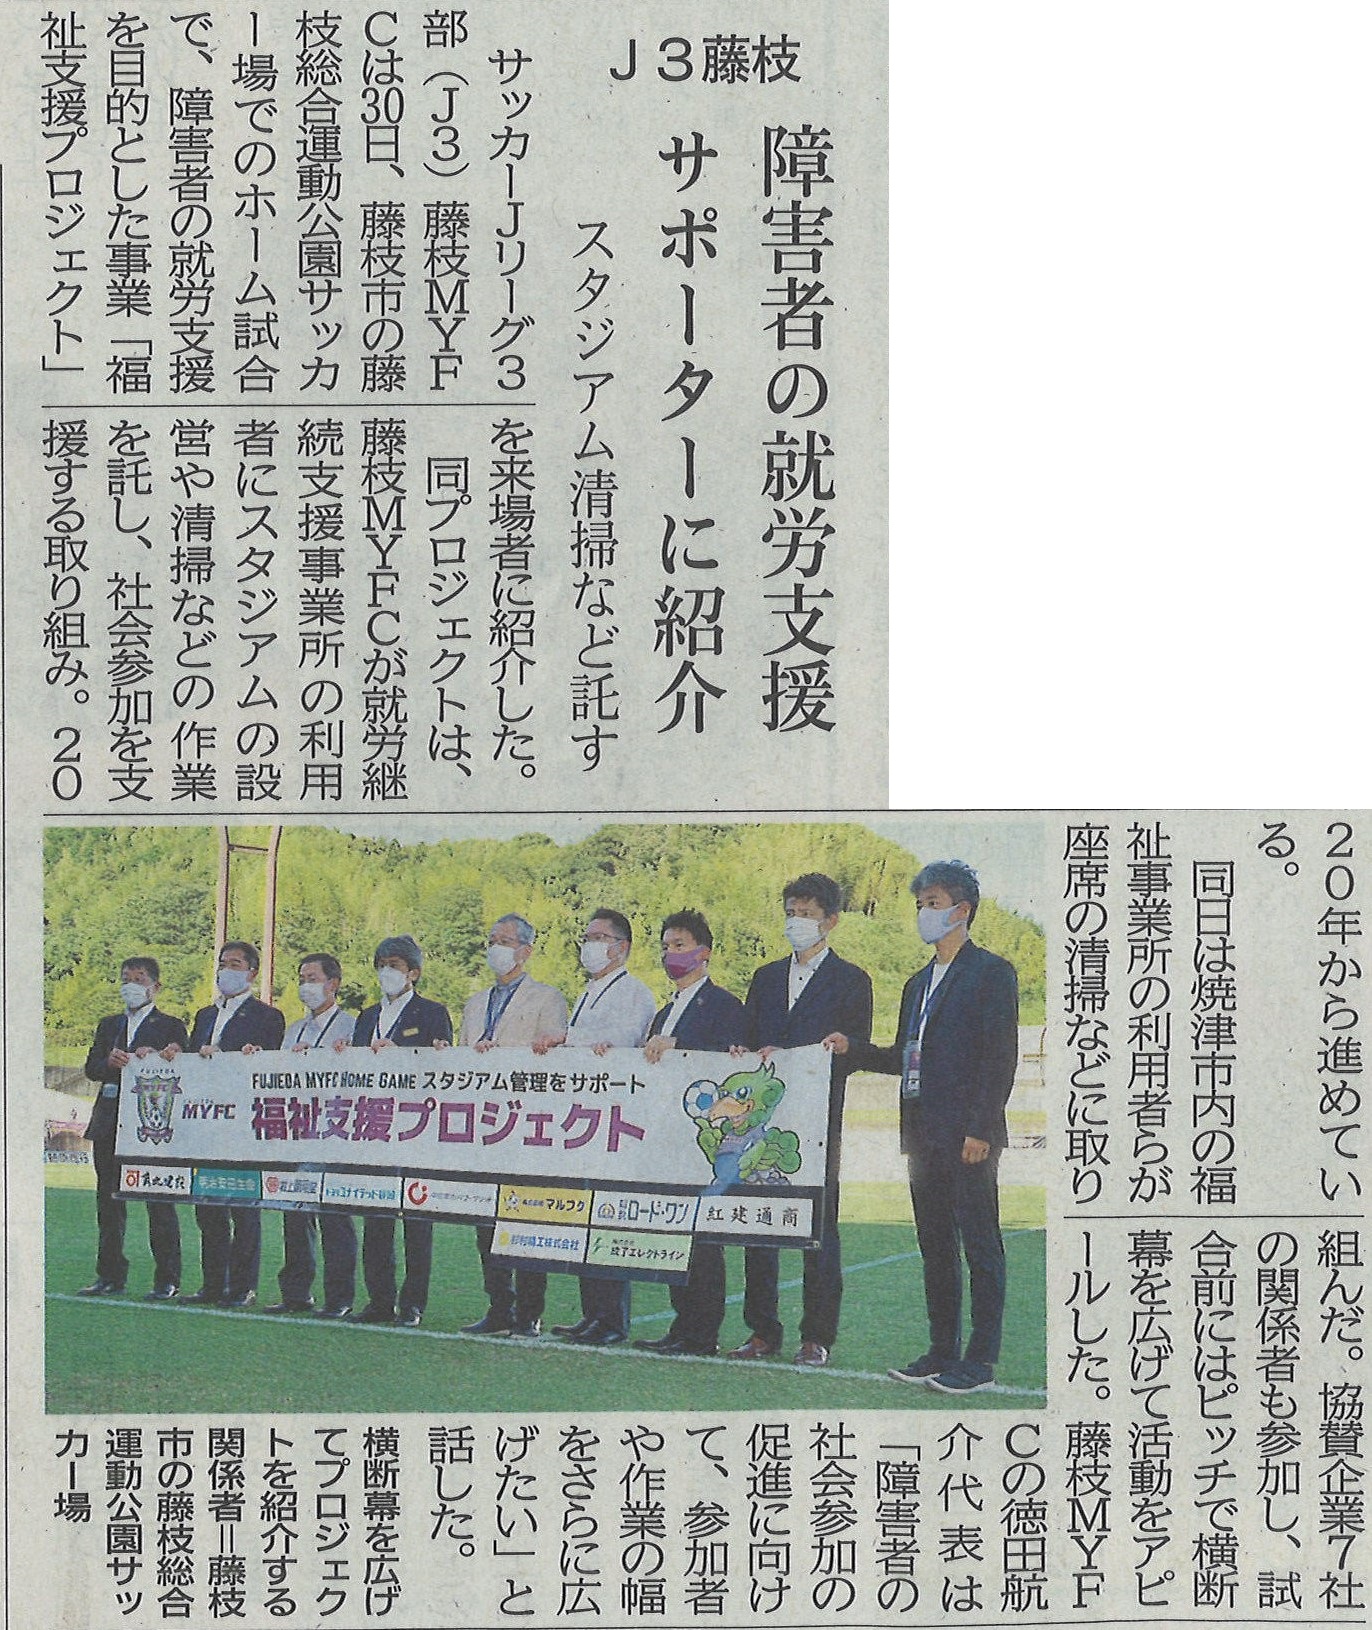 「障害者の就労支援企業」として 静岡新聞に掲載されました！！